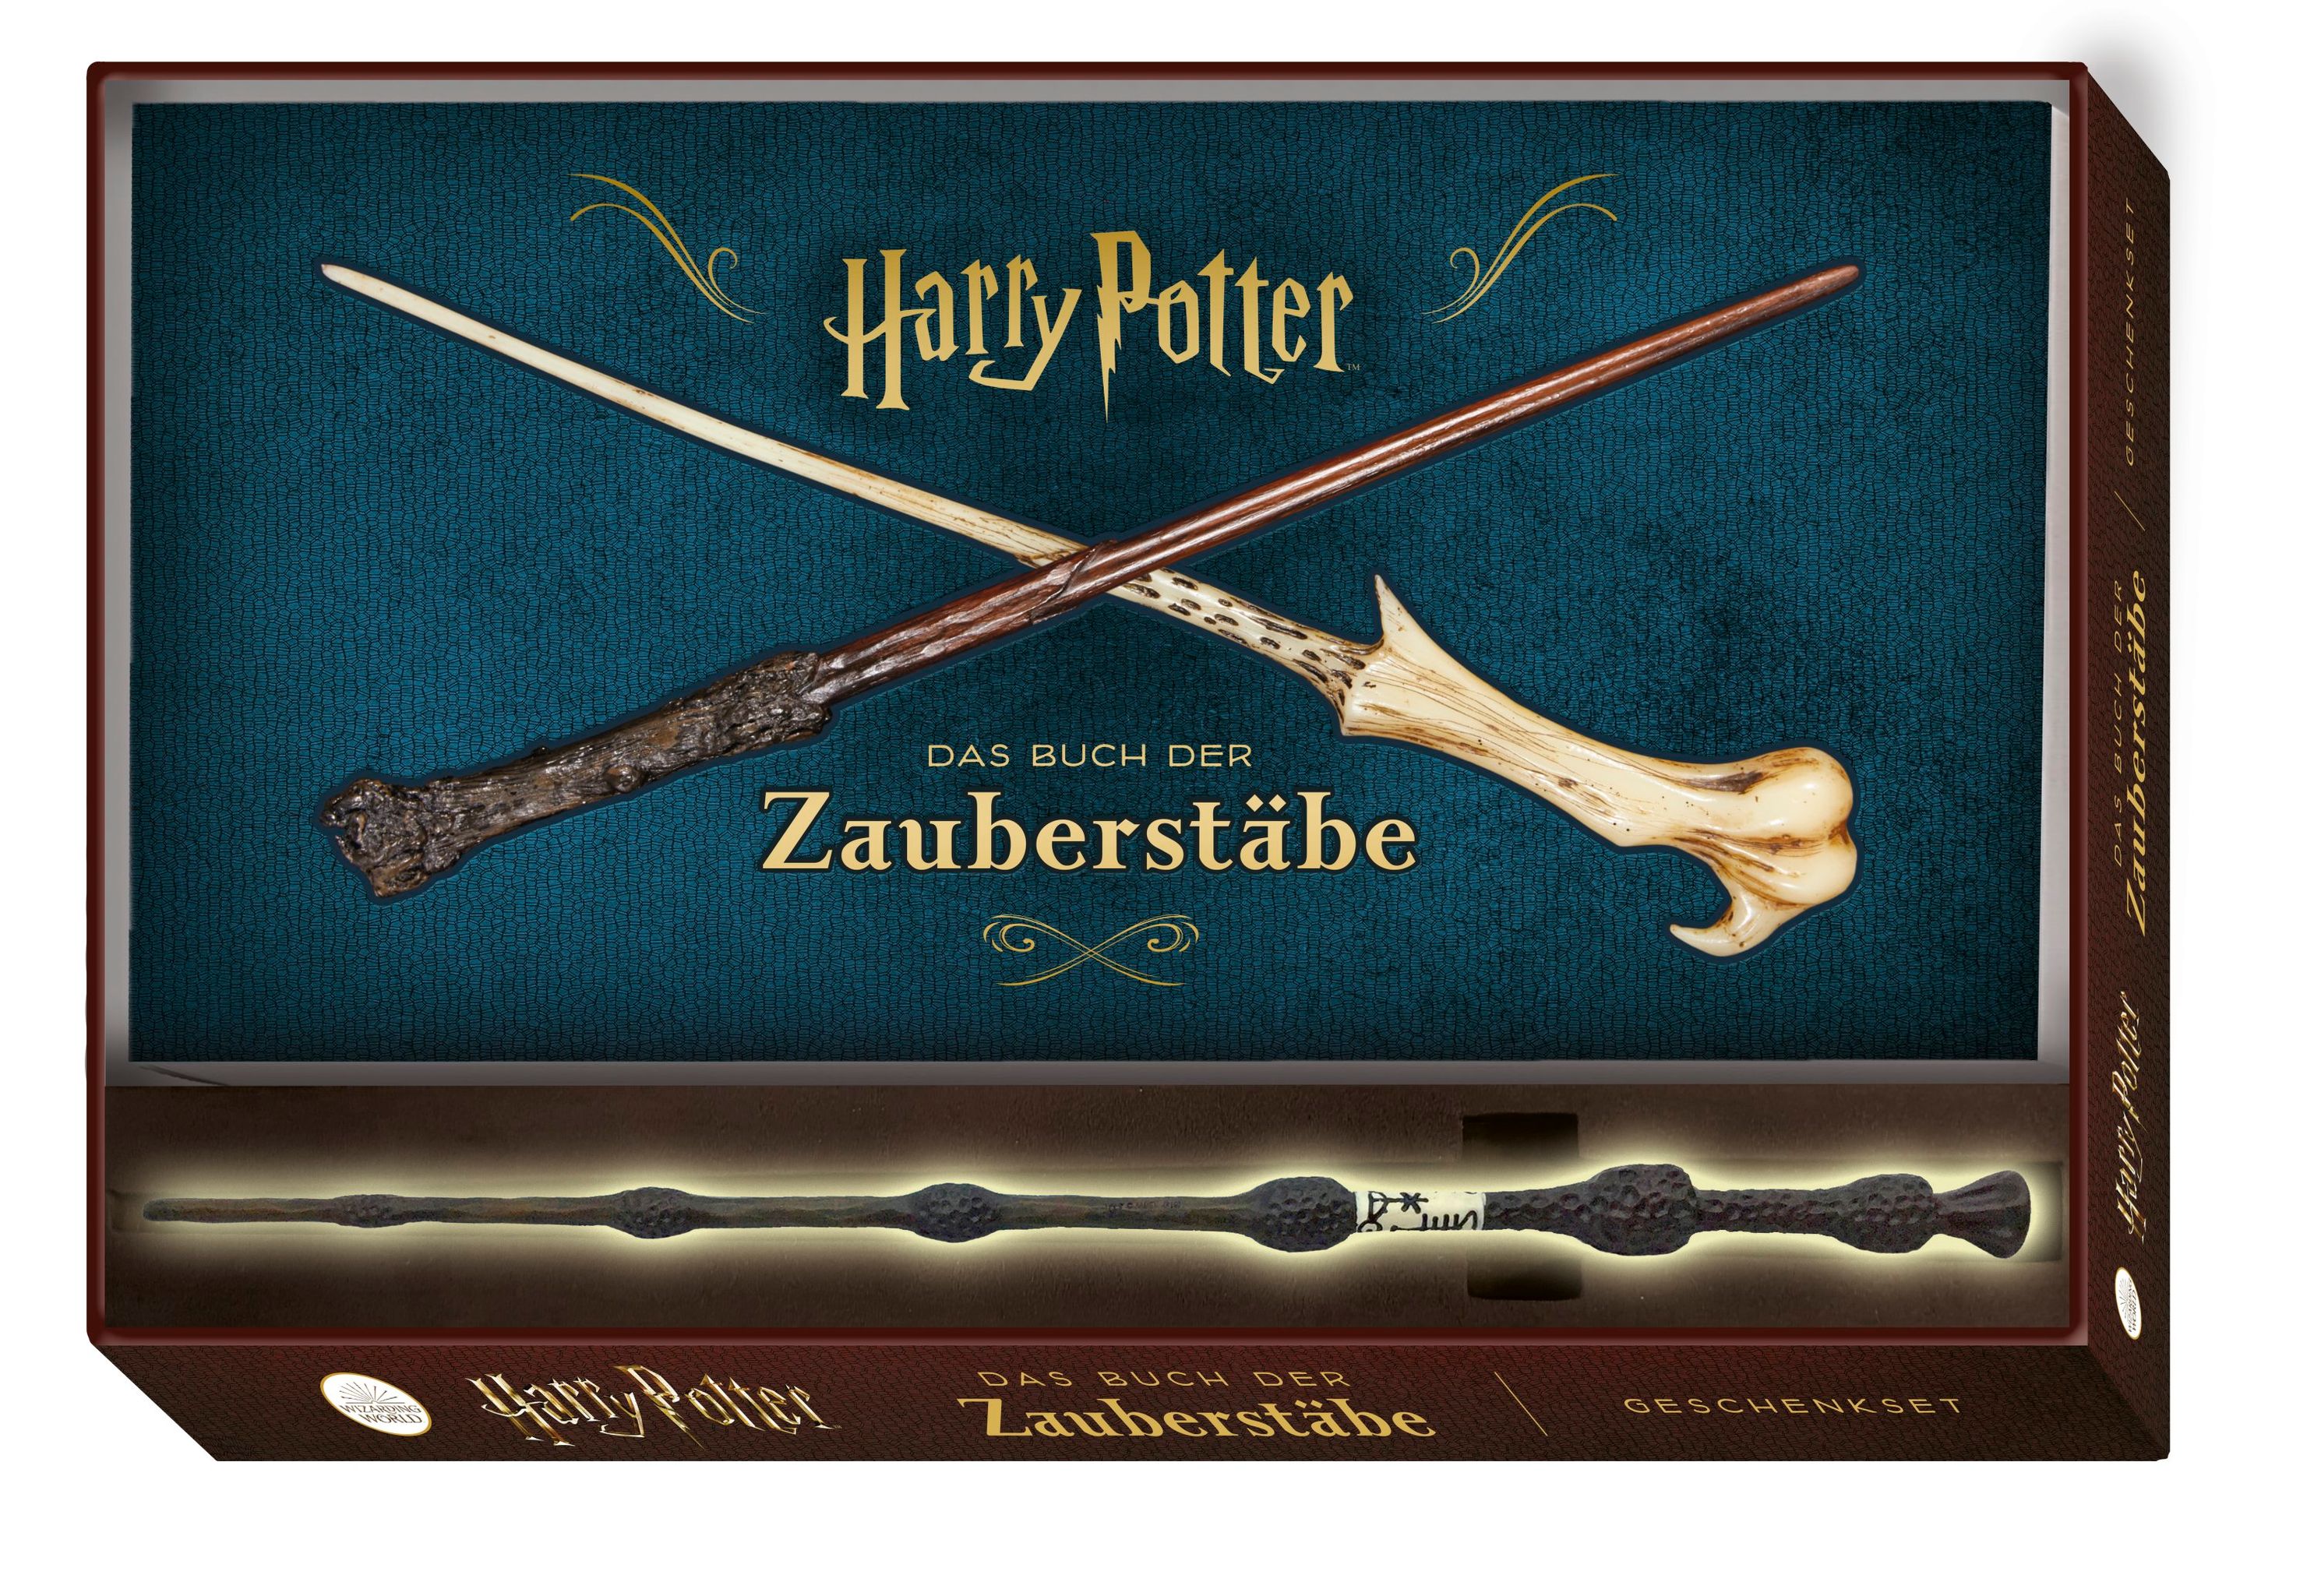 Harry Potter: Das Buch der Zauberstäbe kaufen | tausendkind.de